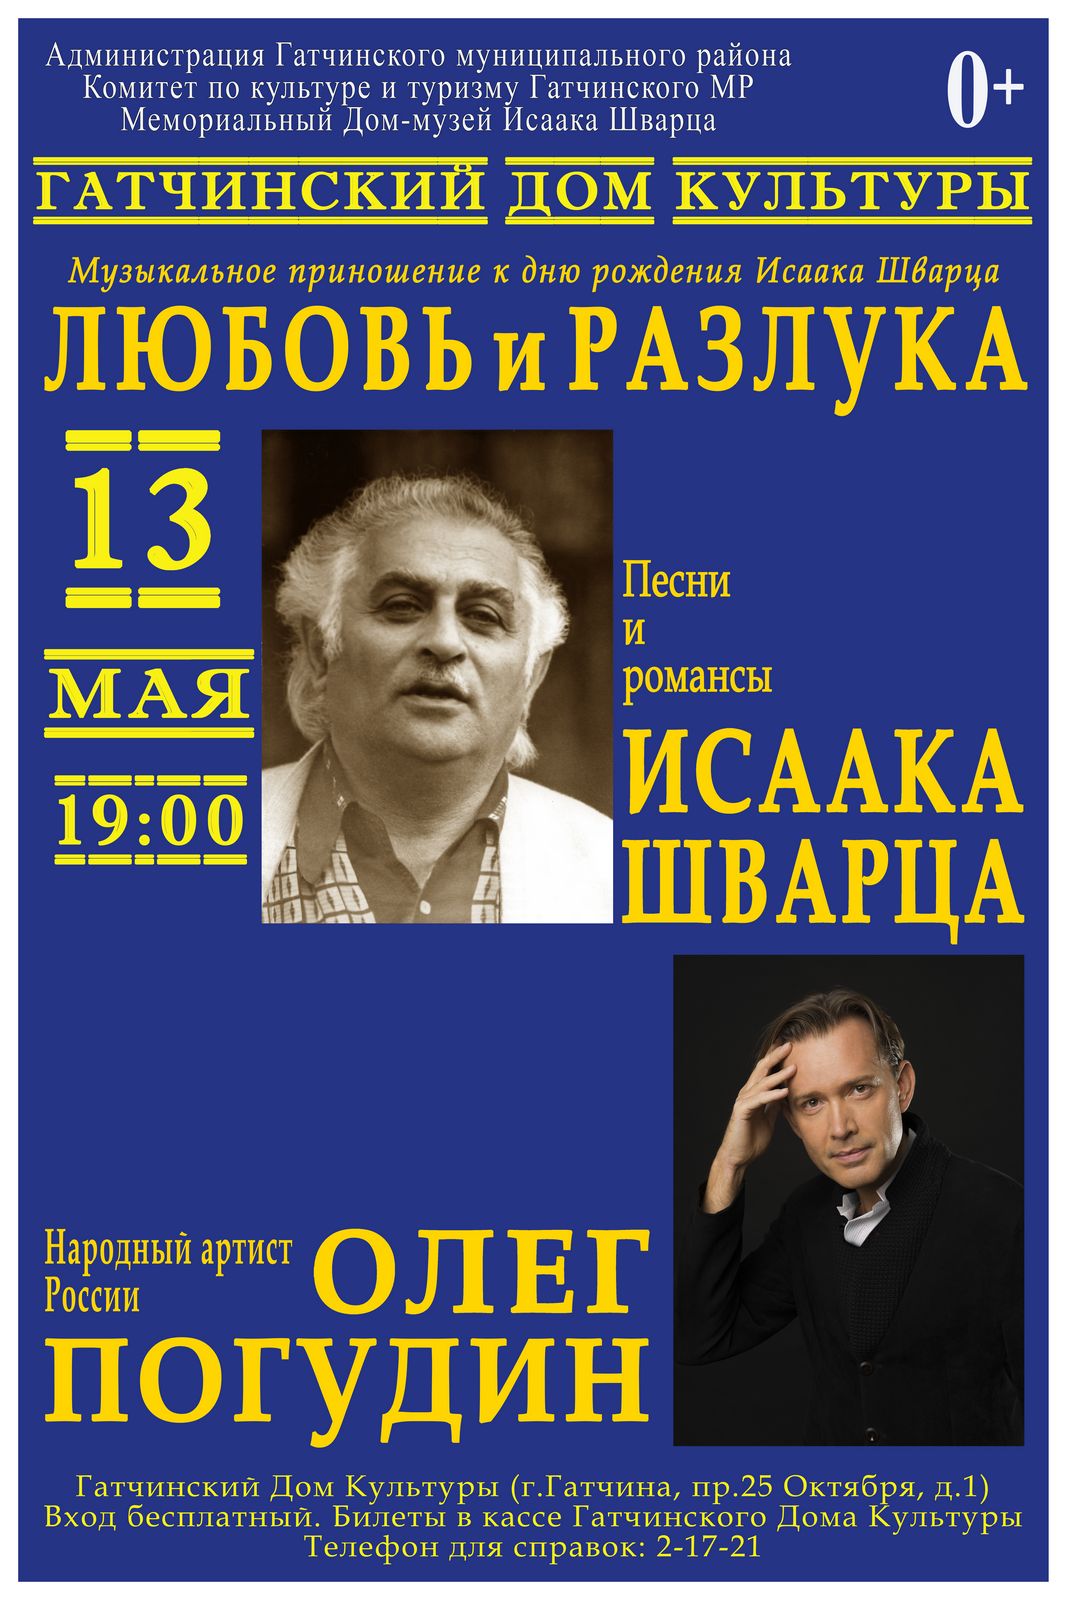 13 мая – день рождения Исаака Шварца
http://museum-schvarz.ru/